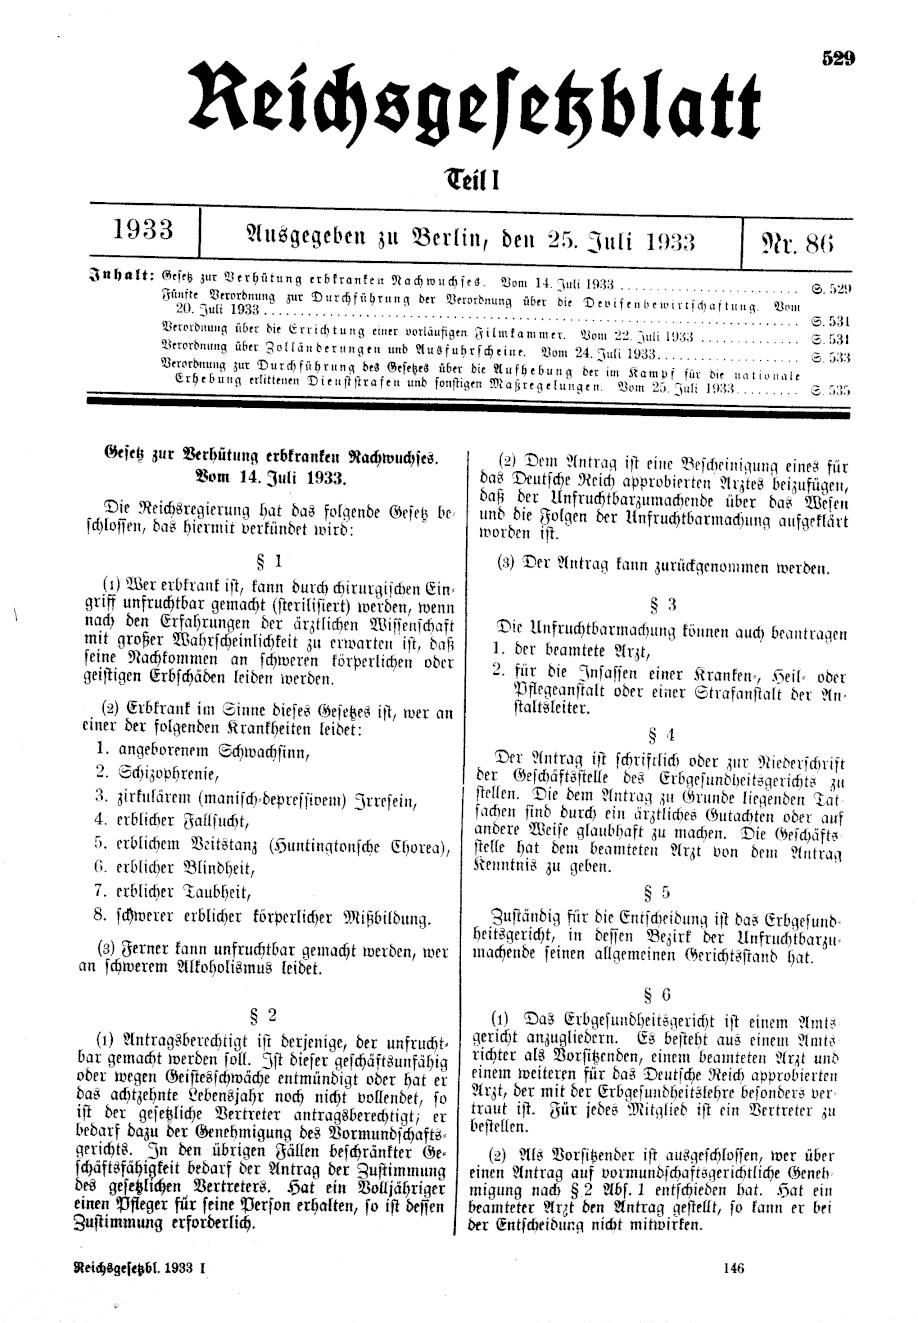 Titelseite des Reichsgesetzblatt vom 25. Juli 1933.